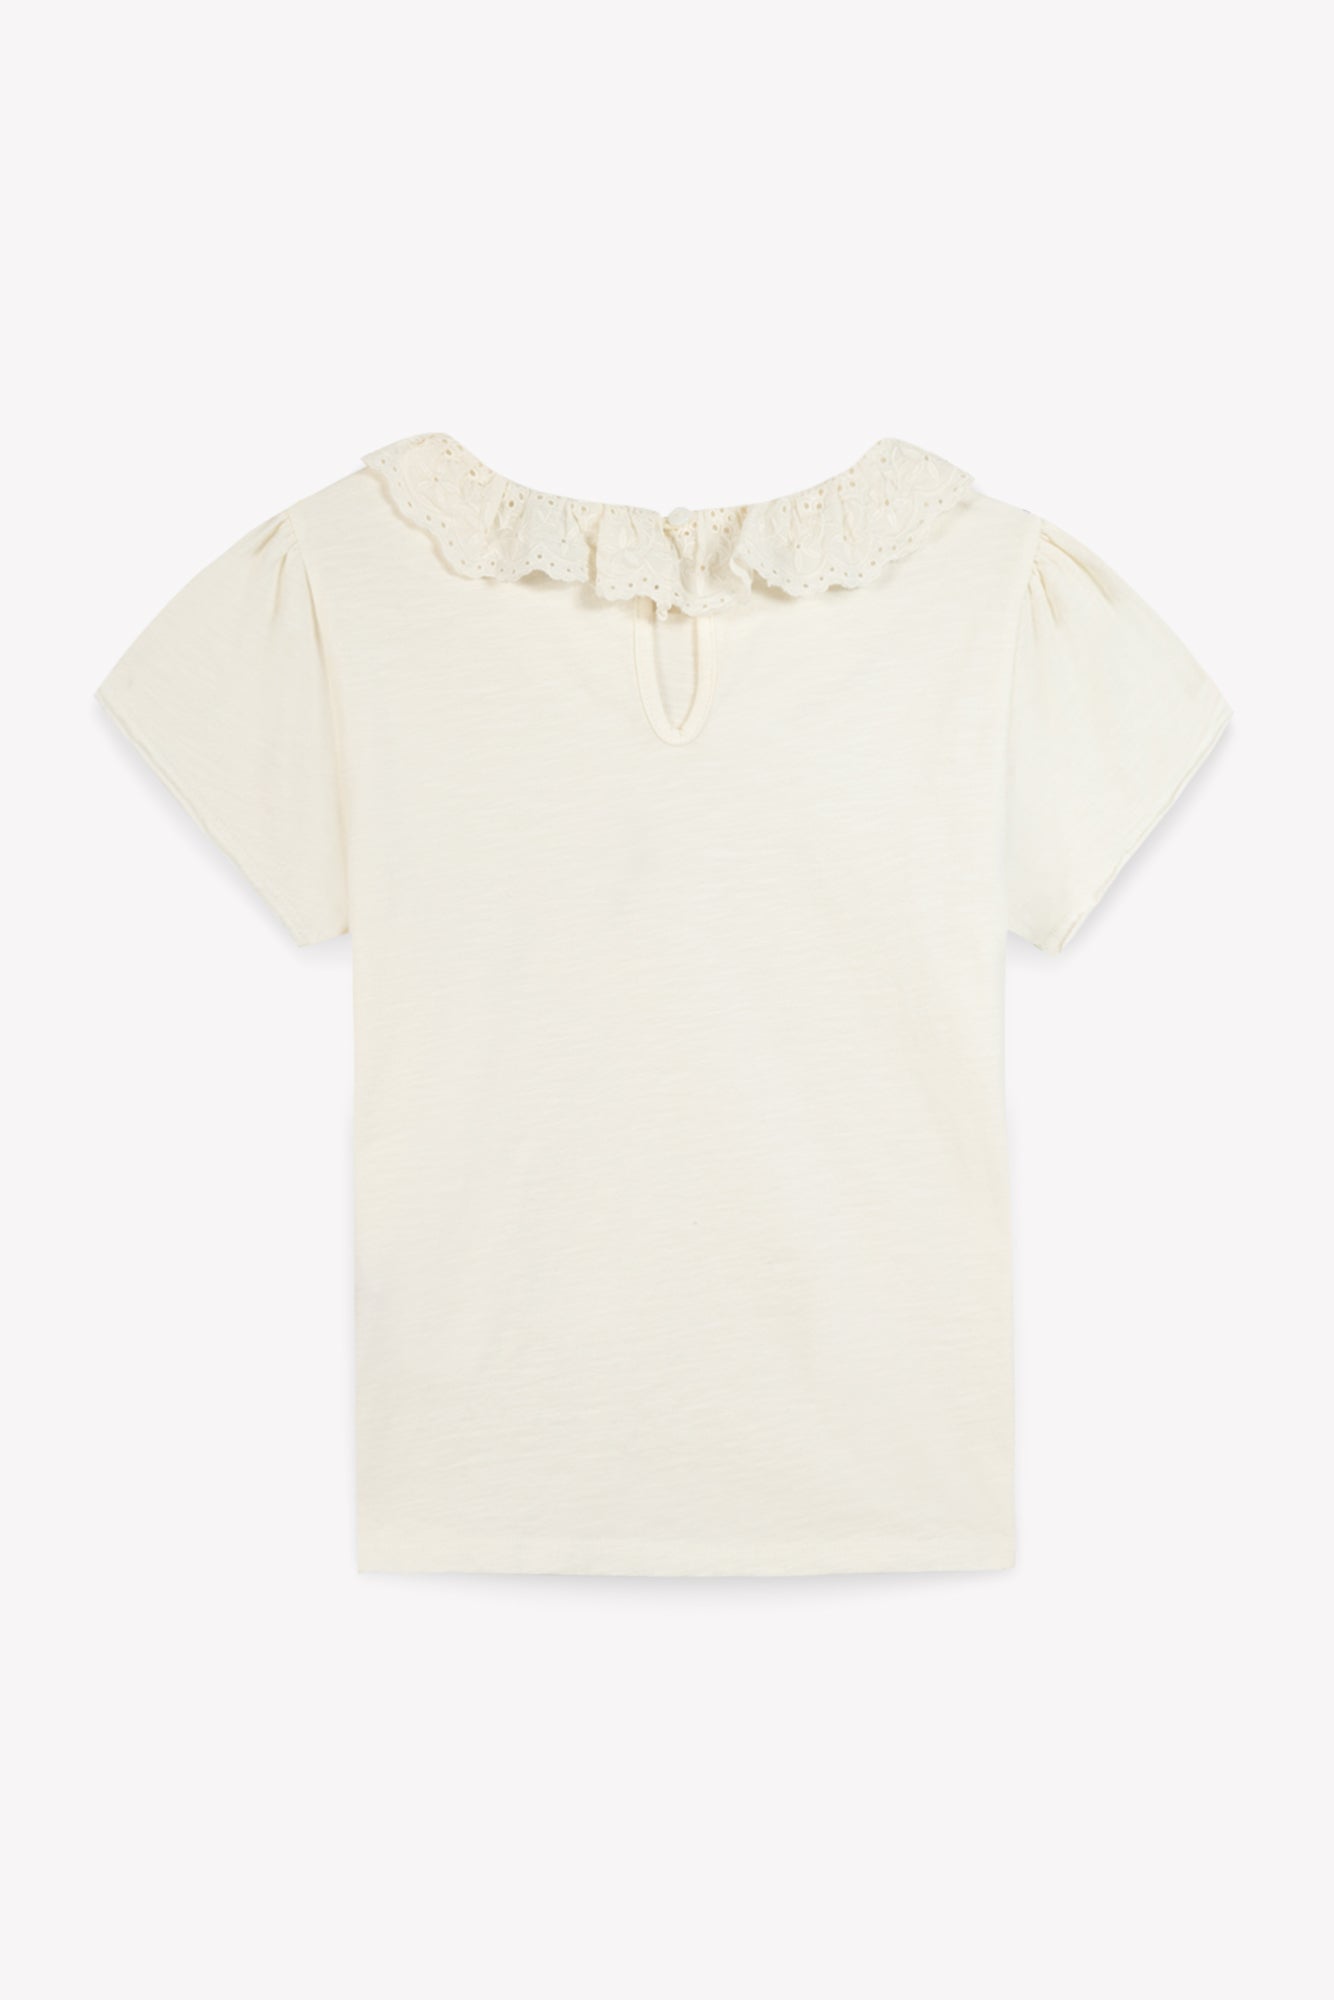 Tee-shirt - Tiris écru coton organique